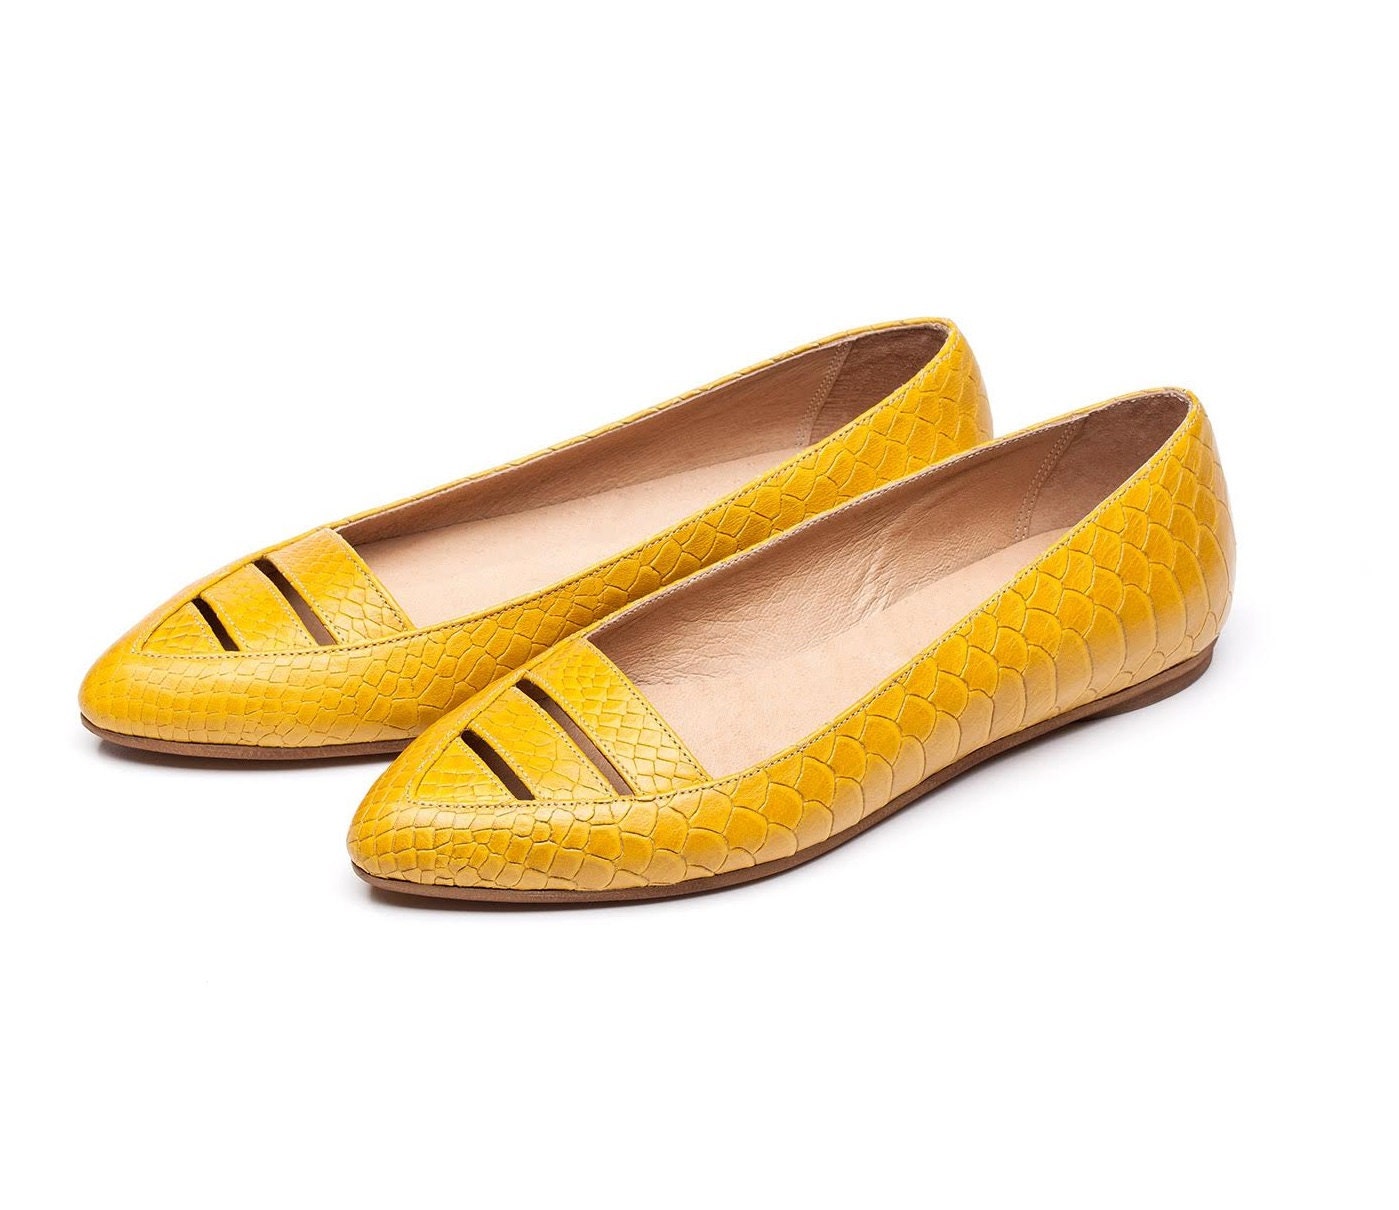 Sale 45% off Yellow flats women shoes yellow shoes. Women